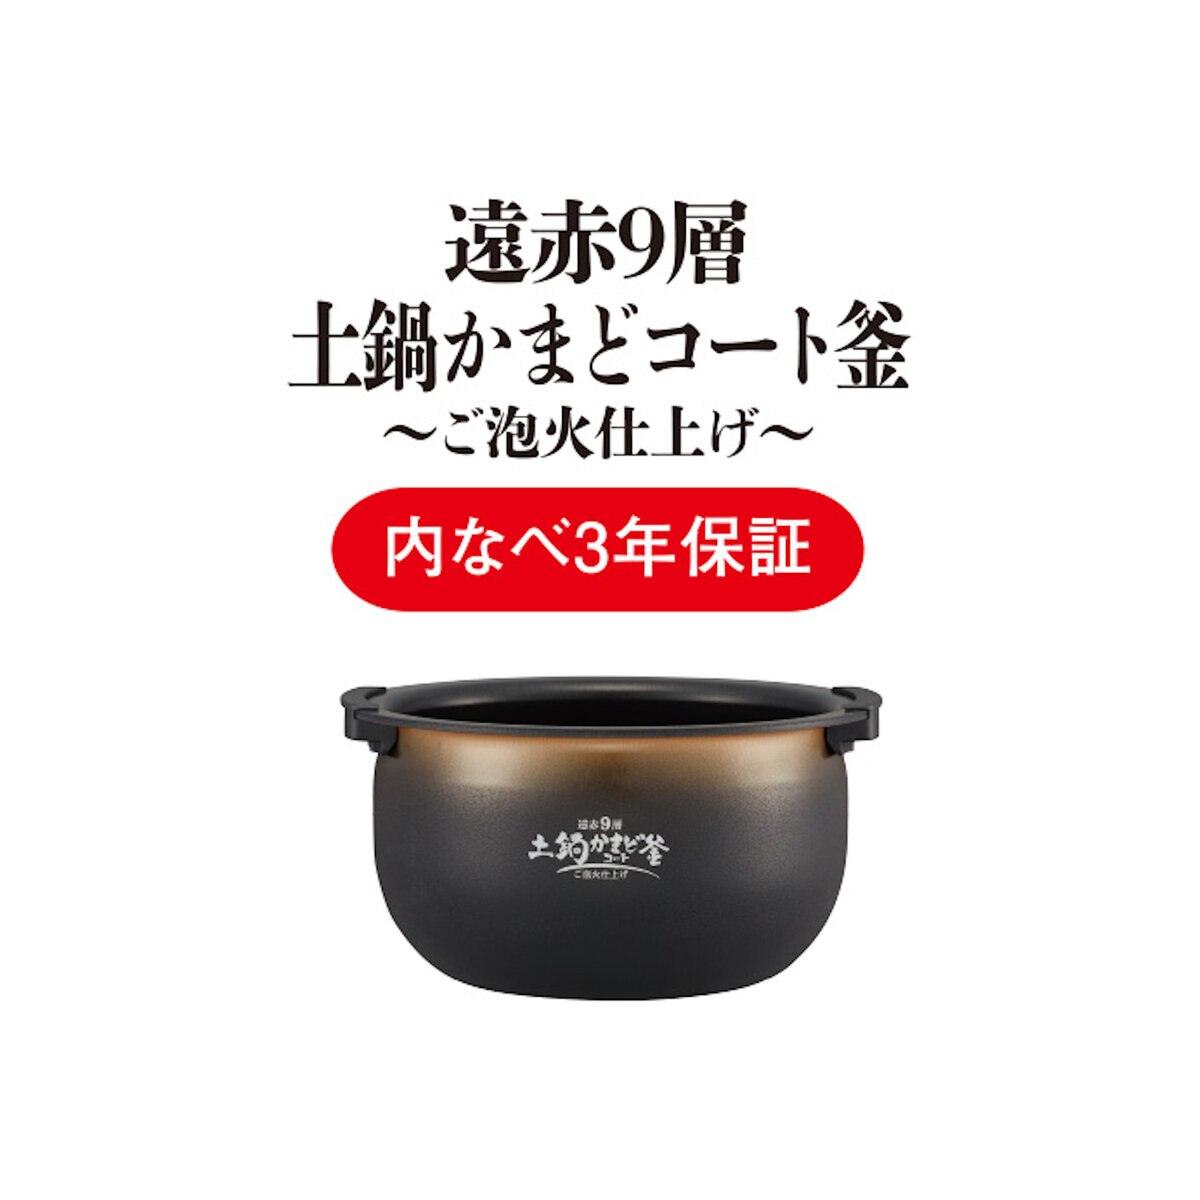 タイガー 圧力IHジャー炊飯器〈炊きたて〉 ご泡火炊き JPD-G060 